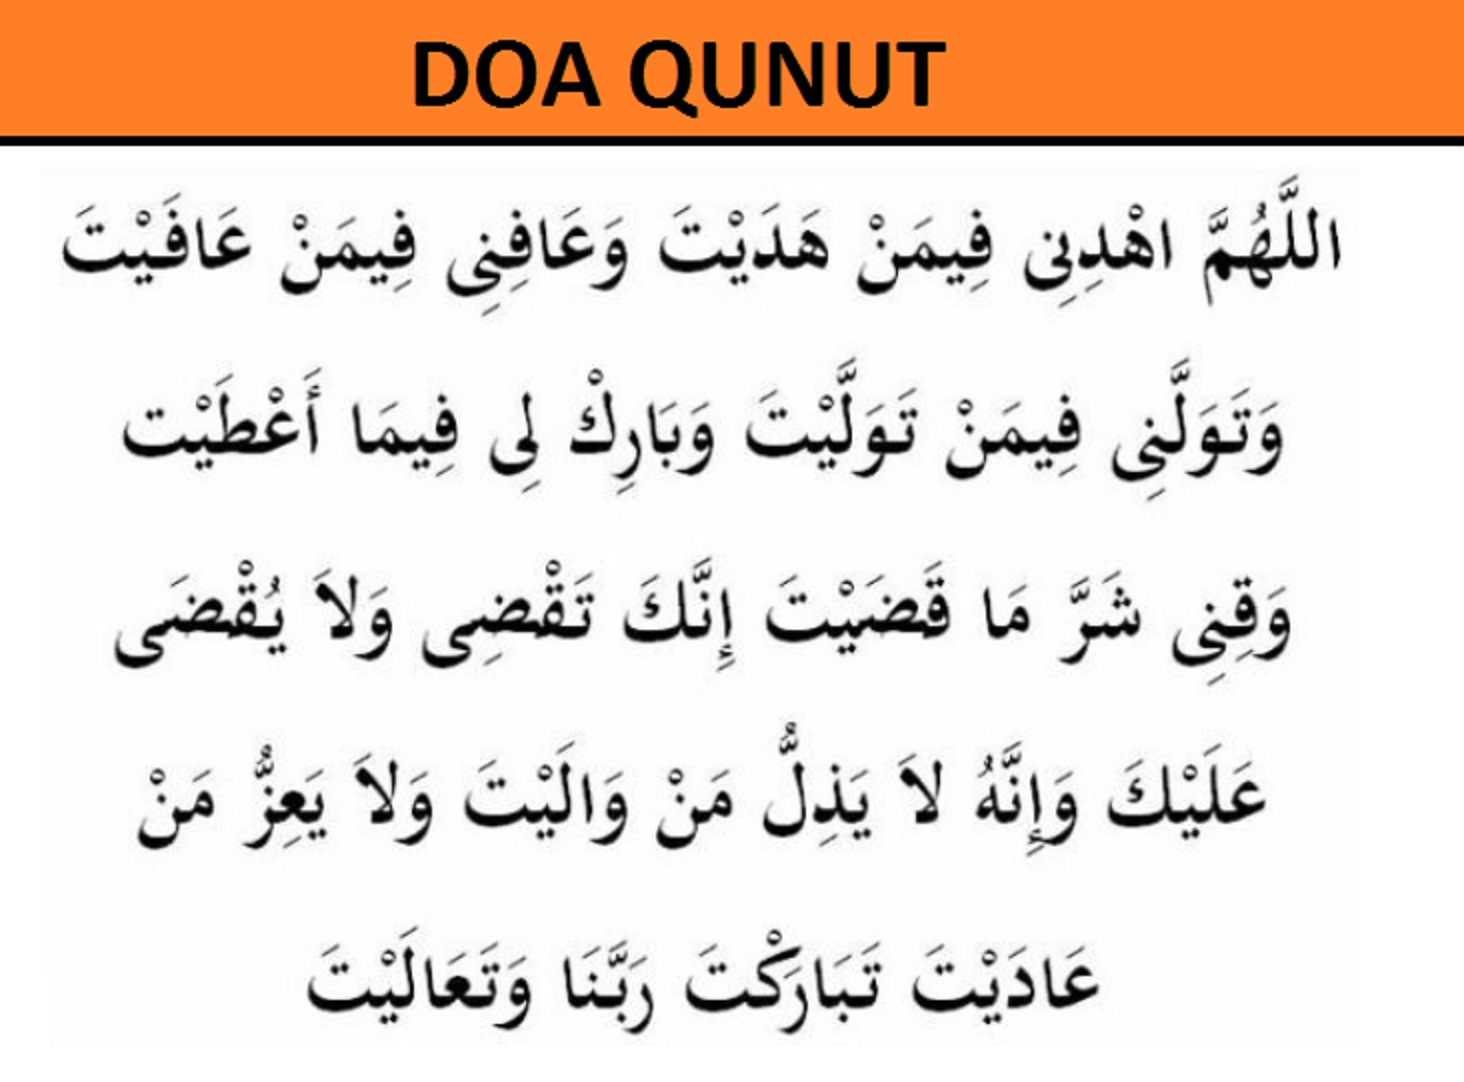 Bacaan Doa Qunut Nazilah Lengkap Arab Latin Dan Artinya Islami The